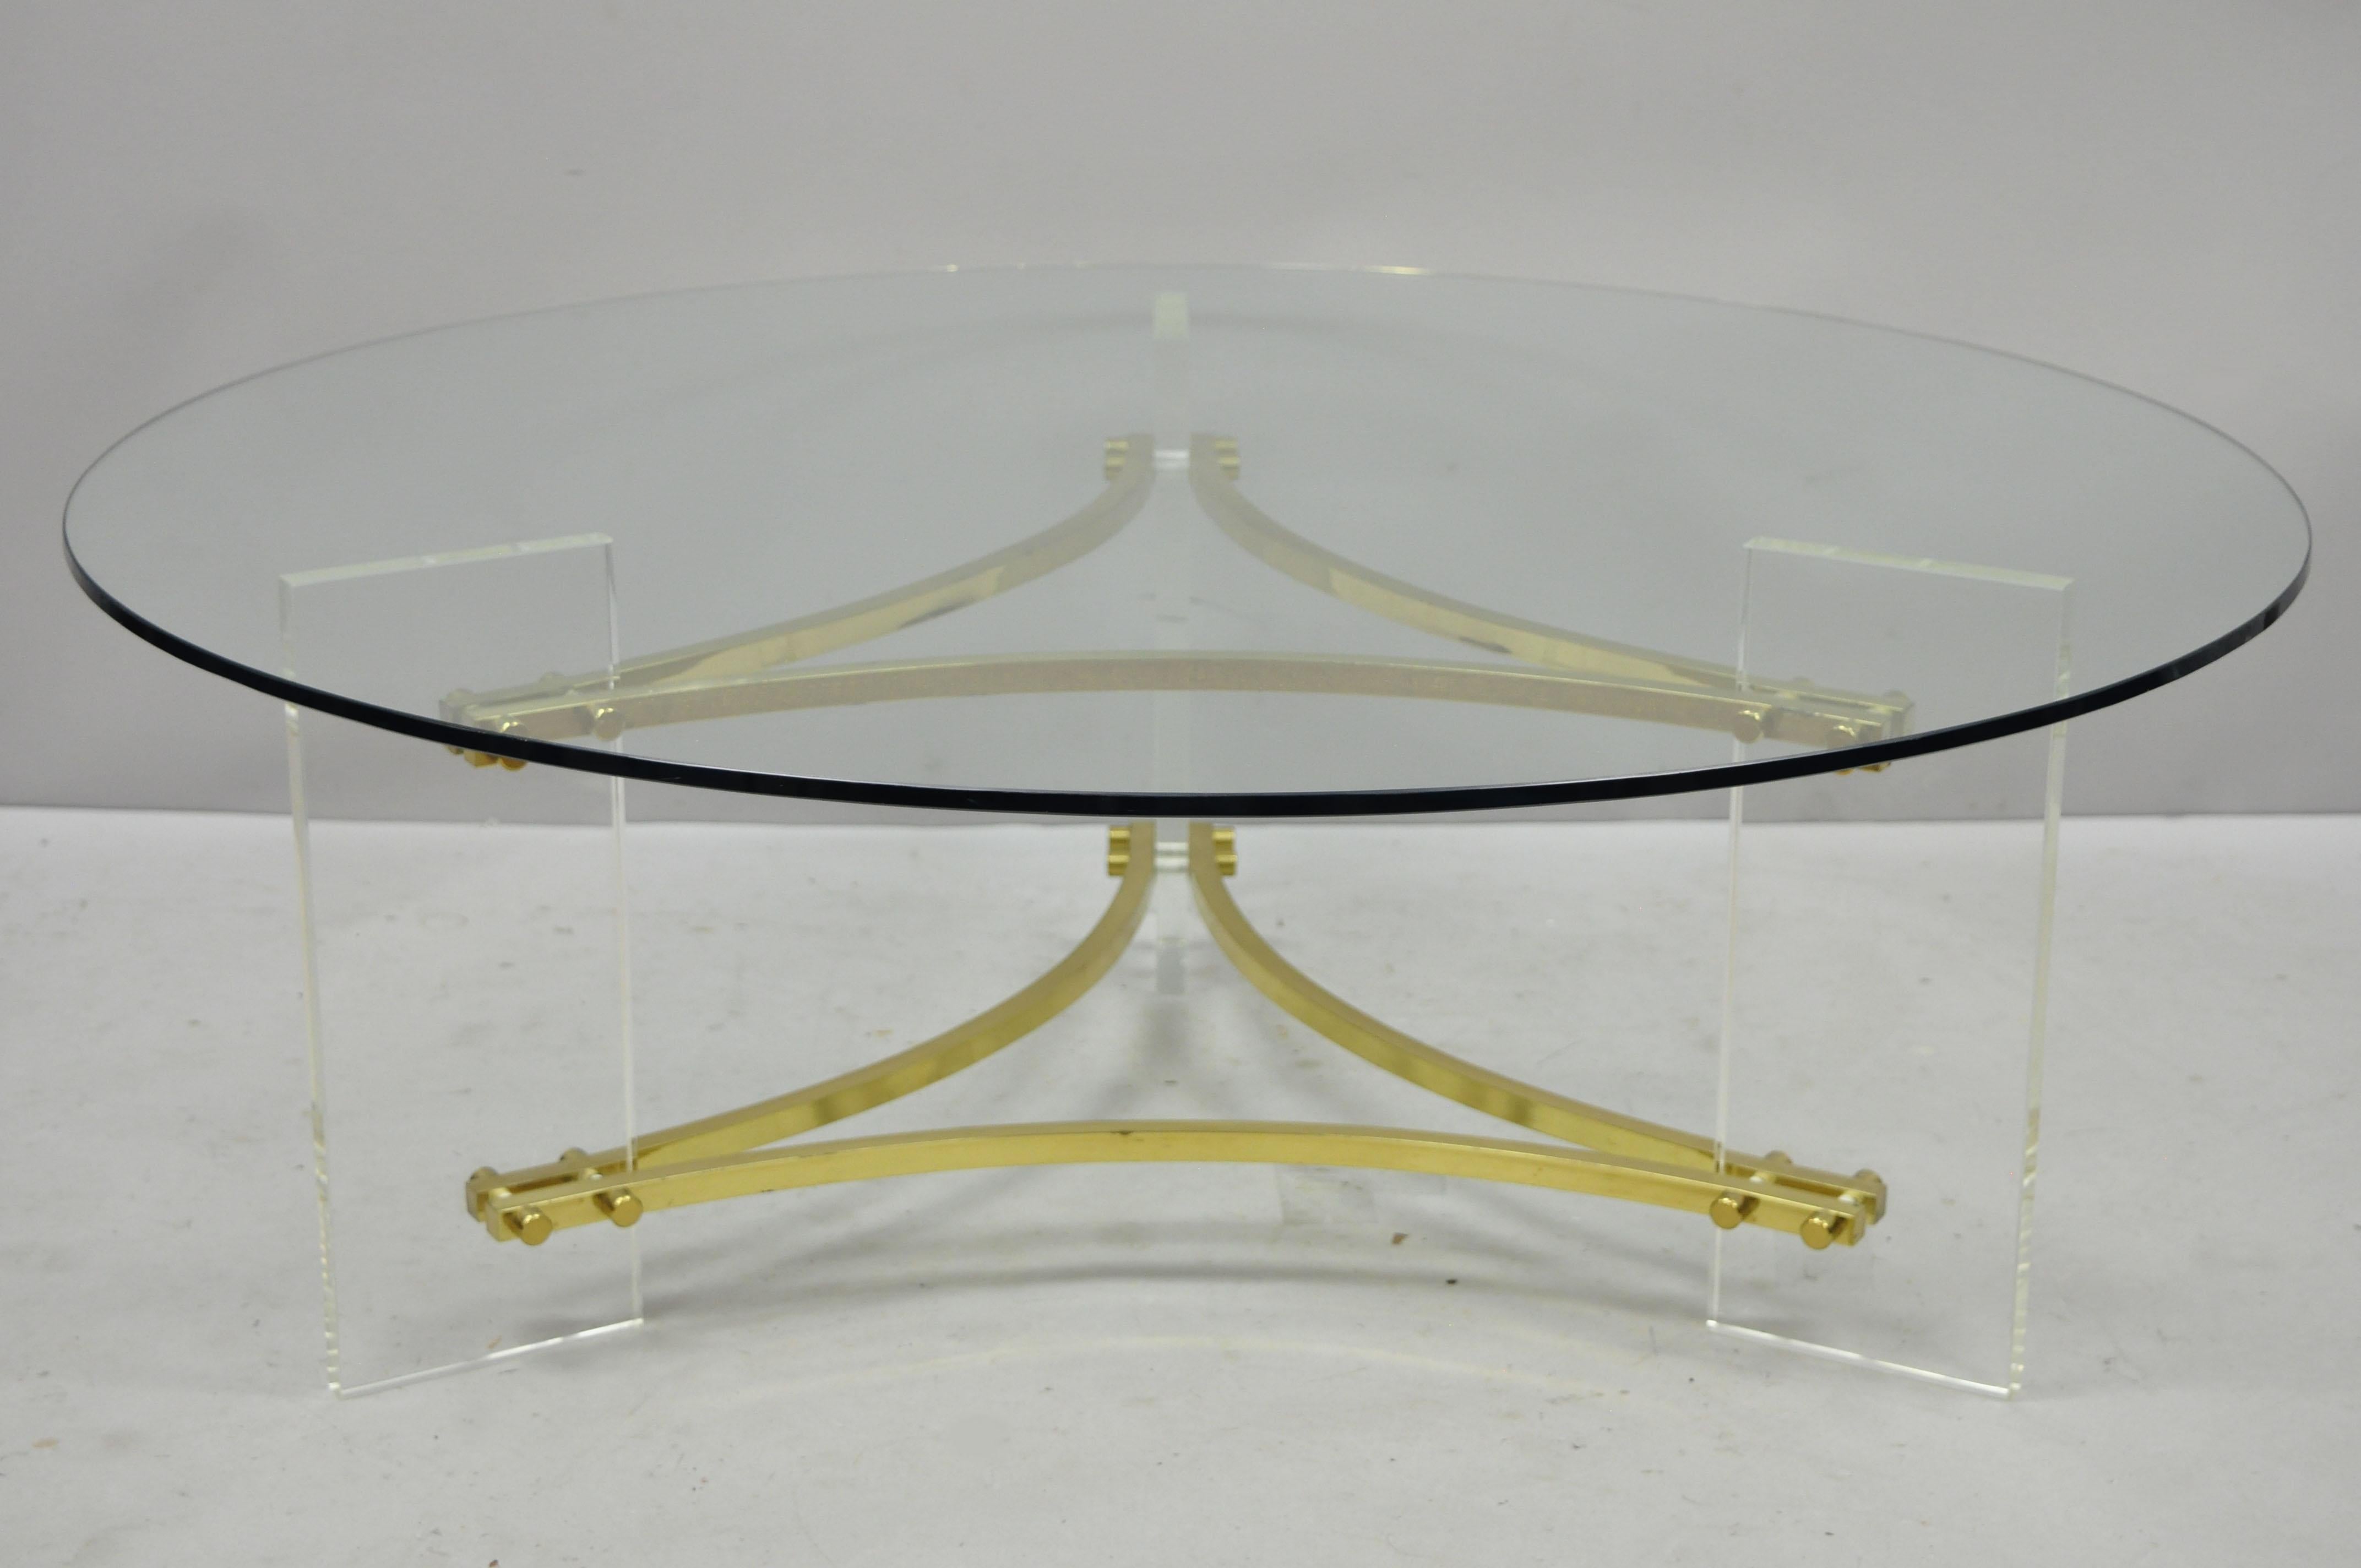 Charles Hollis Jones Table basse ronde en laiton et verre Lucite, de style moderne du milieu du siècle. Table ronde en verre, trois pieds en Lucite, supports en laiton, vers le milieu du 20e siècle. Mesures : 15.5